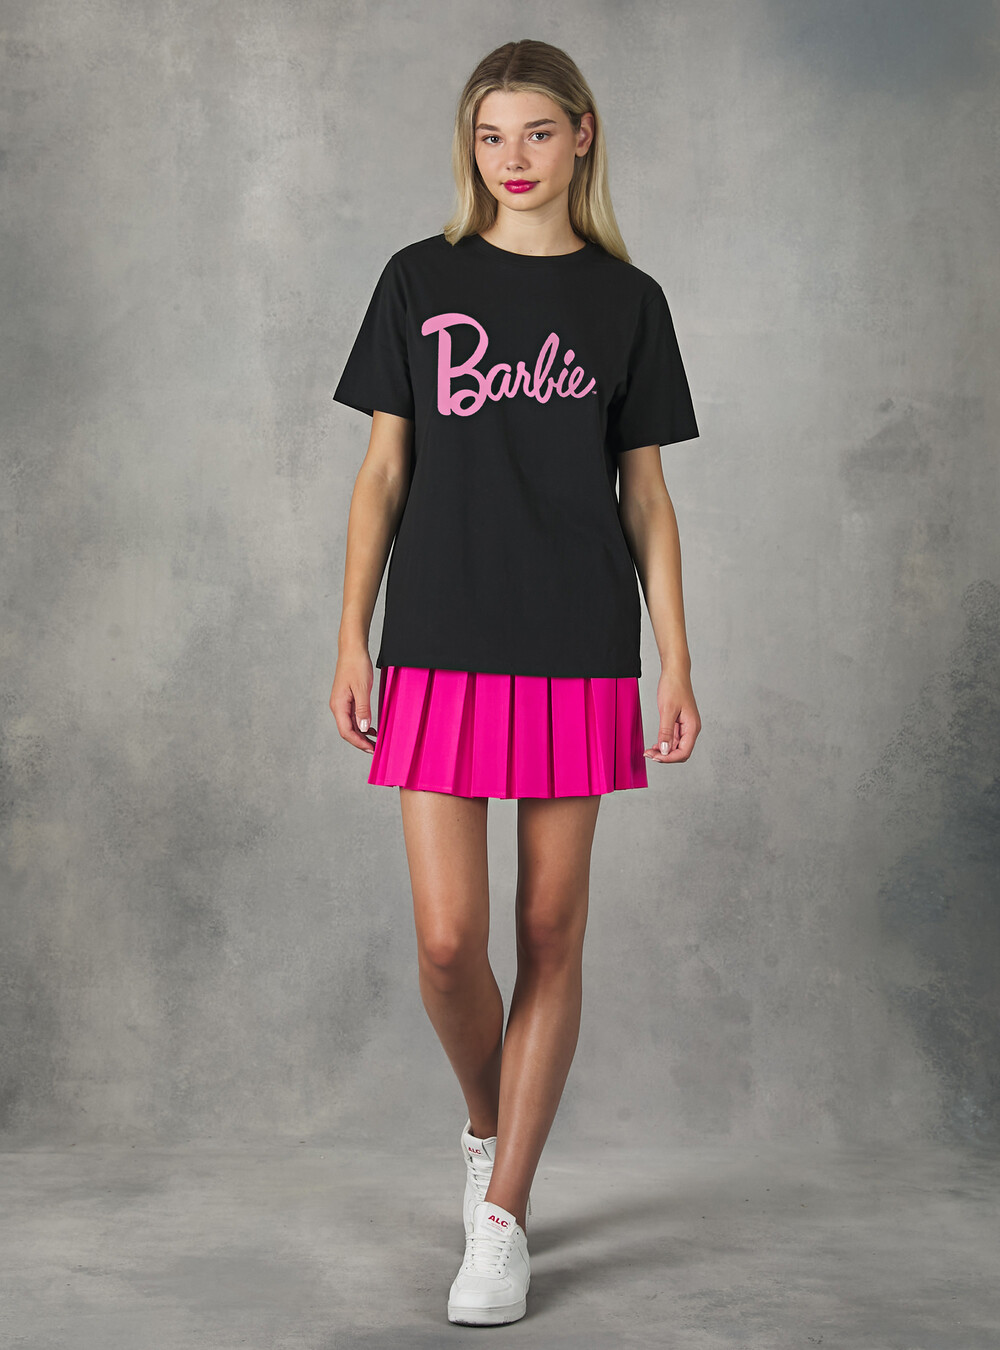 Camiseta Barbie / Alcott